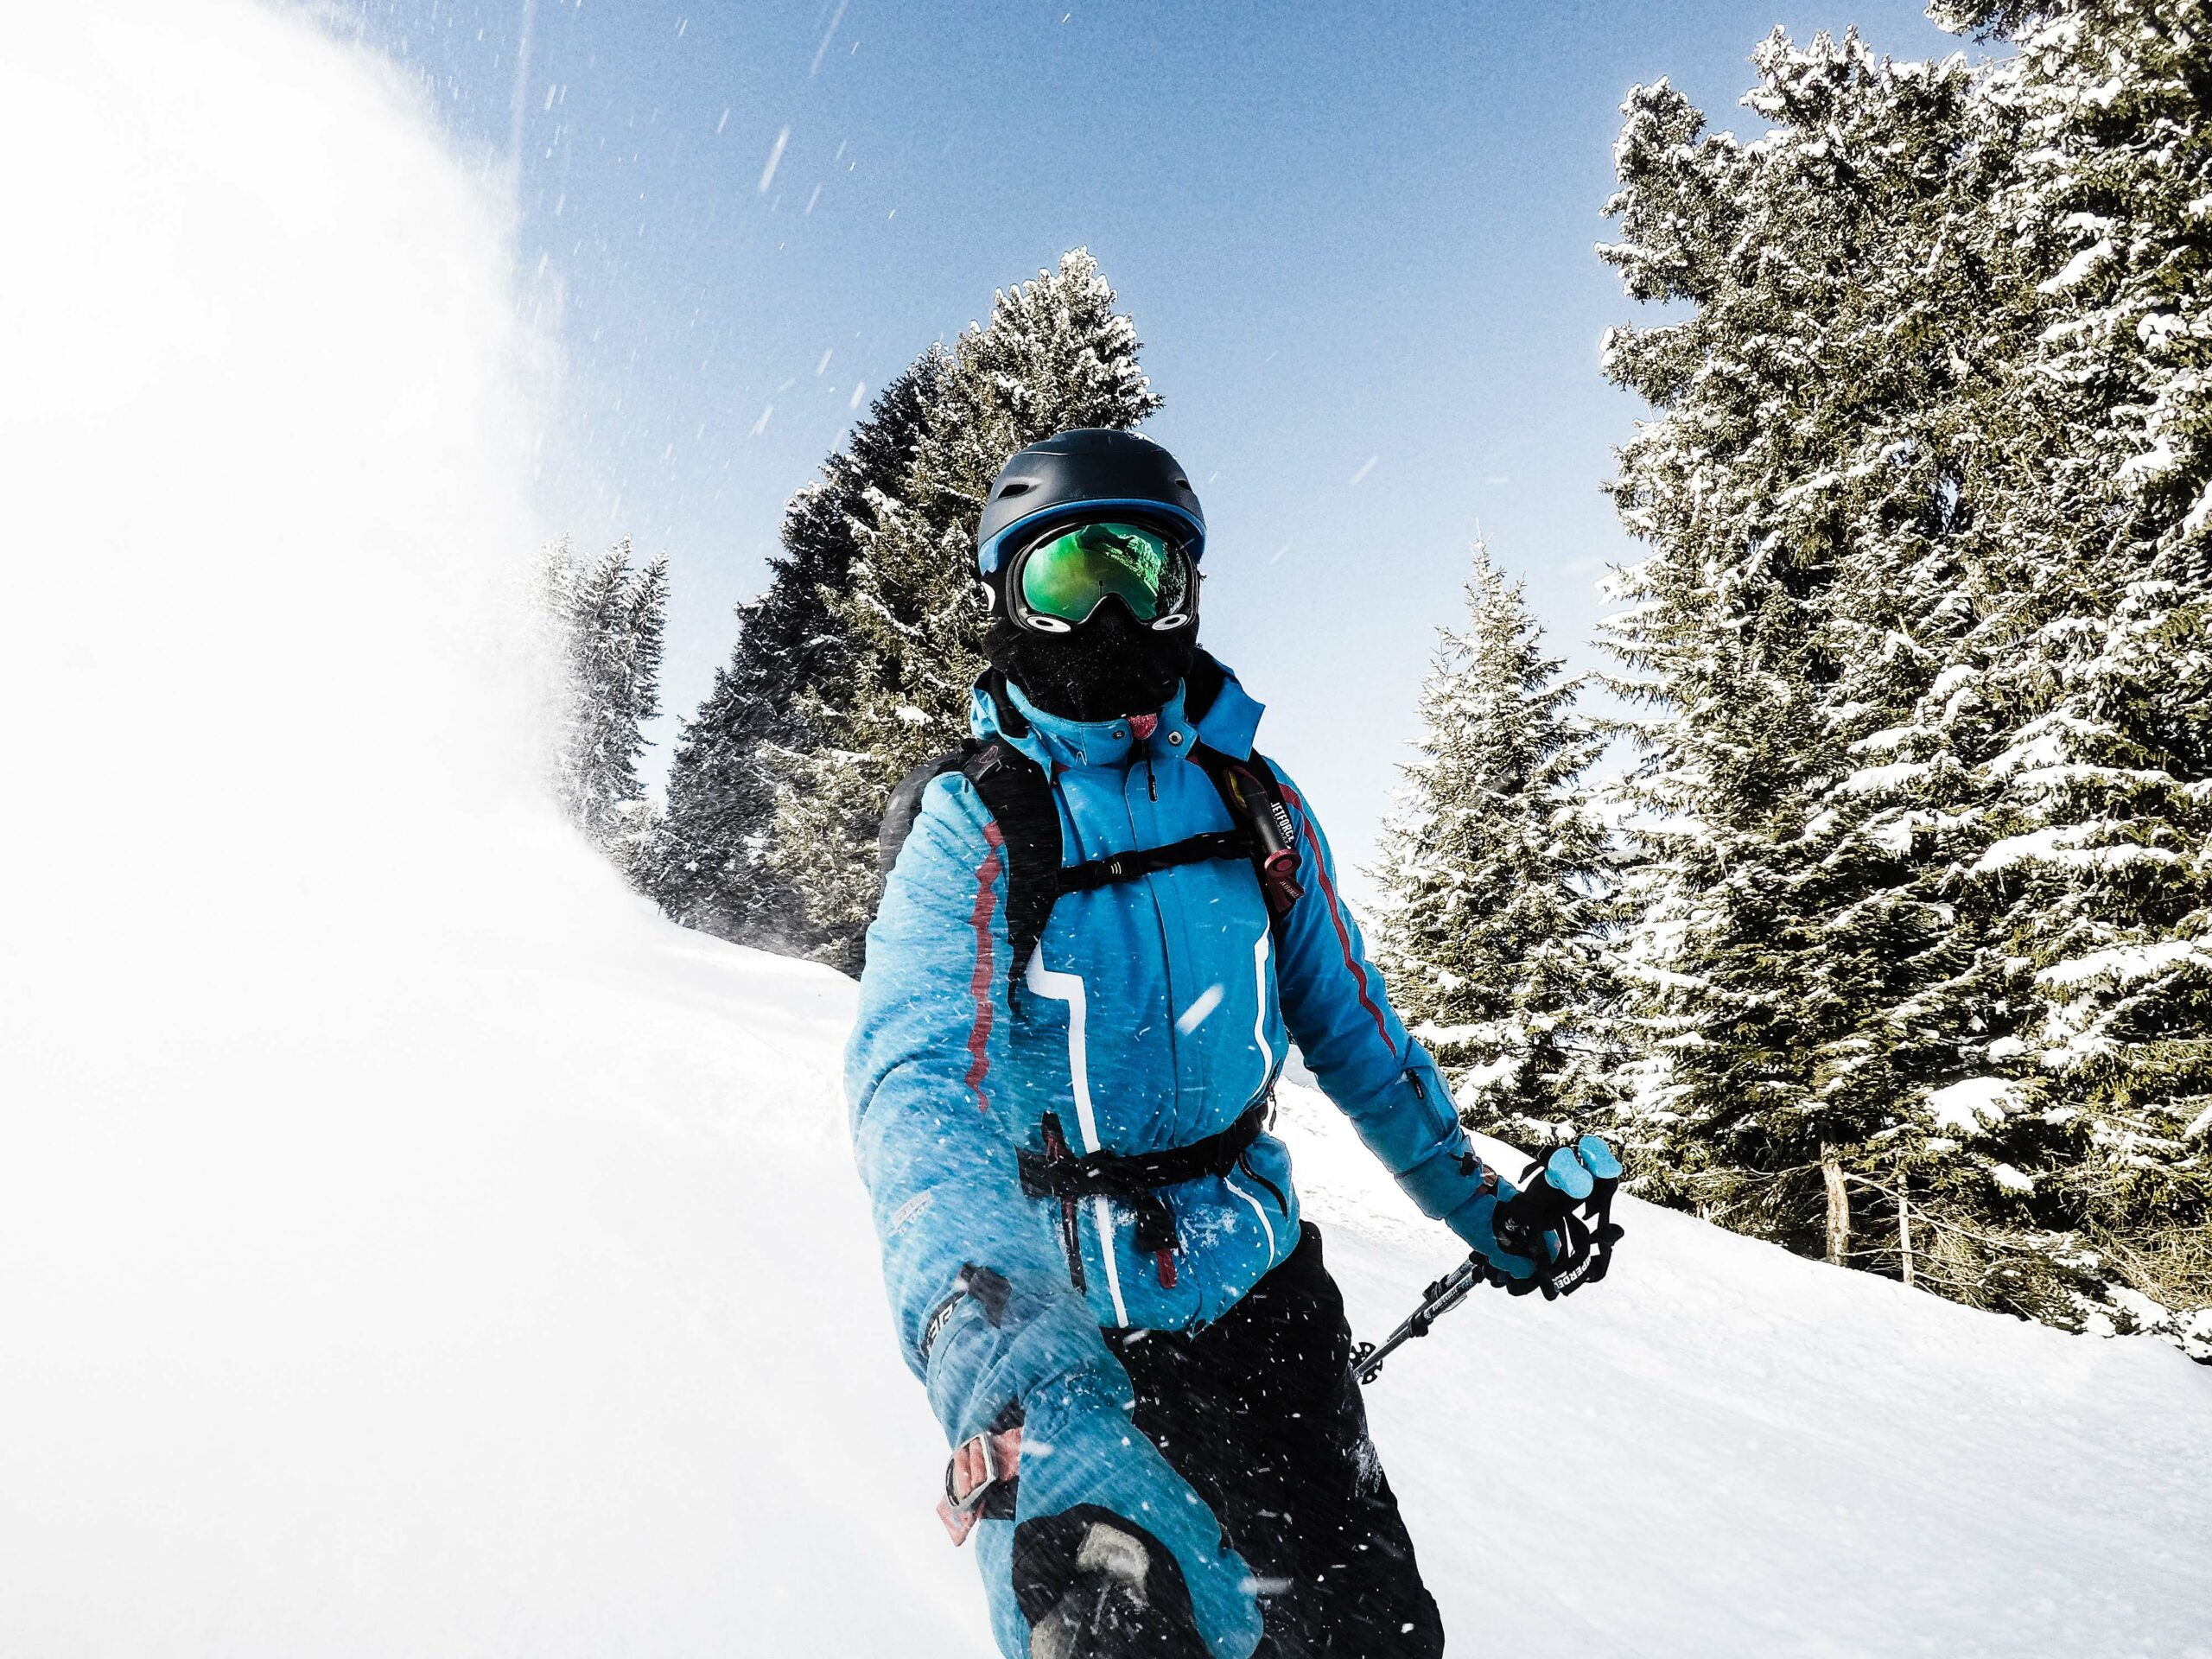 Gafas de esquí con el reflejo de las montañas nevadas. Hombre en